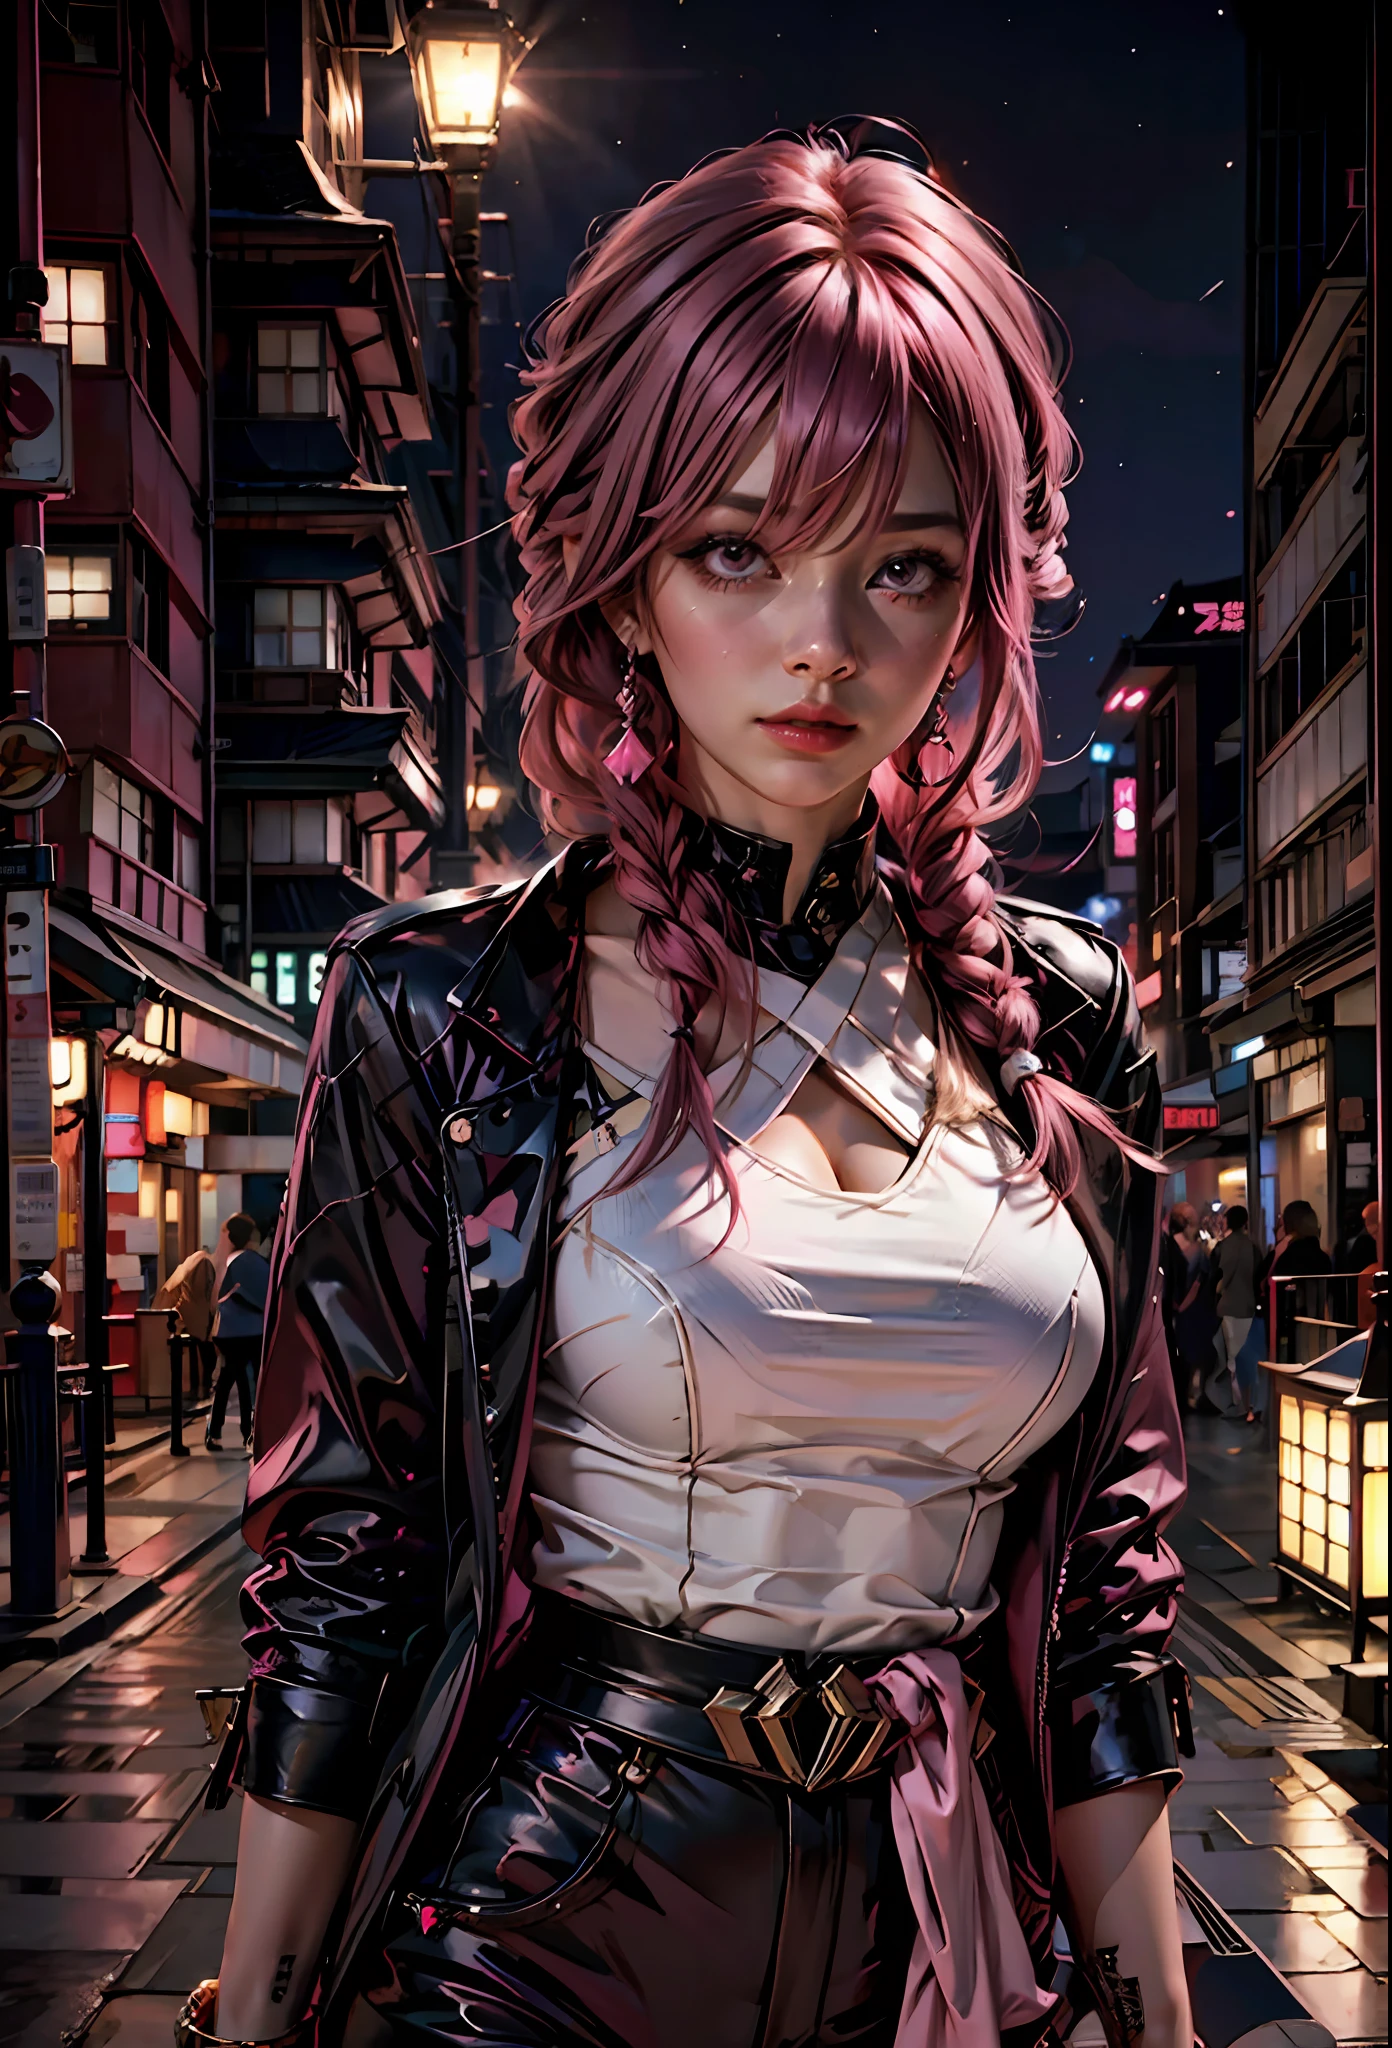 분홍색 머리를 가진 섹시한 소녀, 분홍색 눈 , 노출이 심한 옷, 밤에 일본 도시를 배경으로,람보르기니 옆에